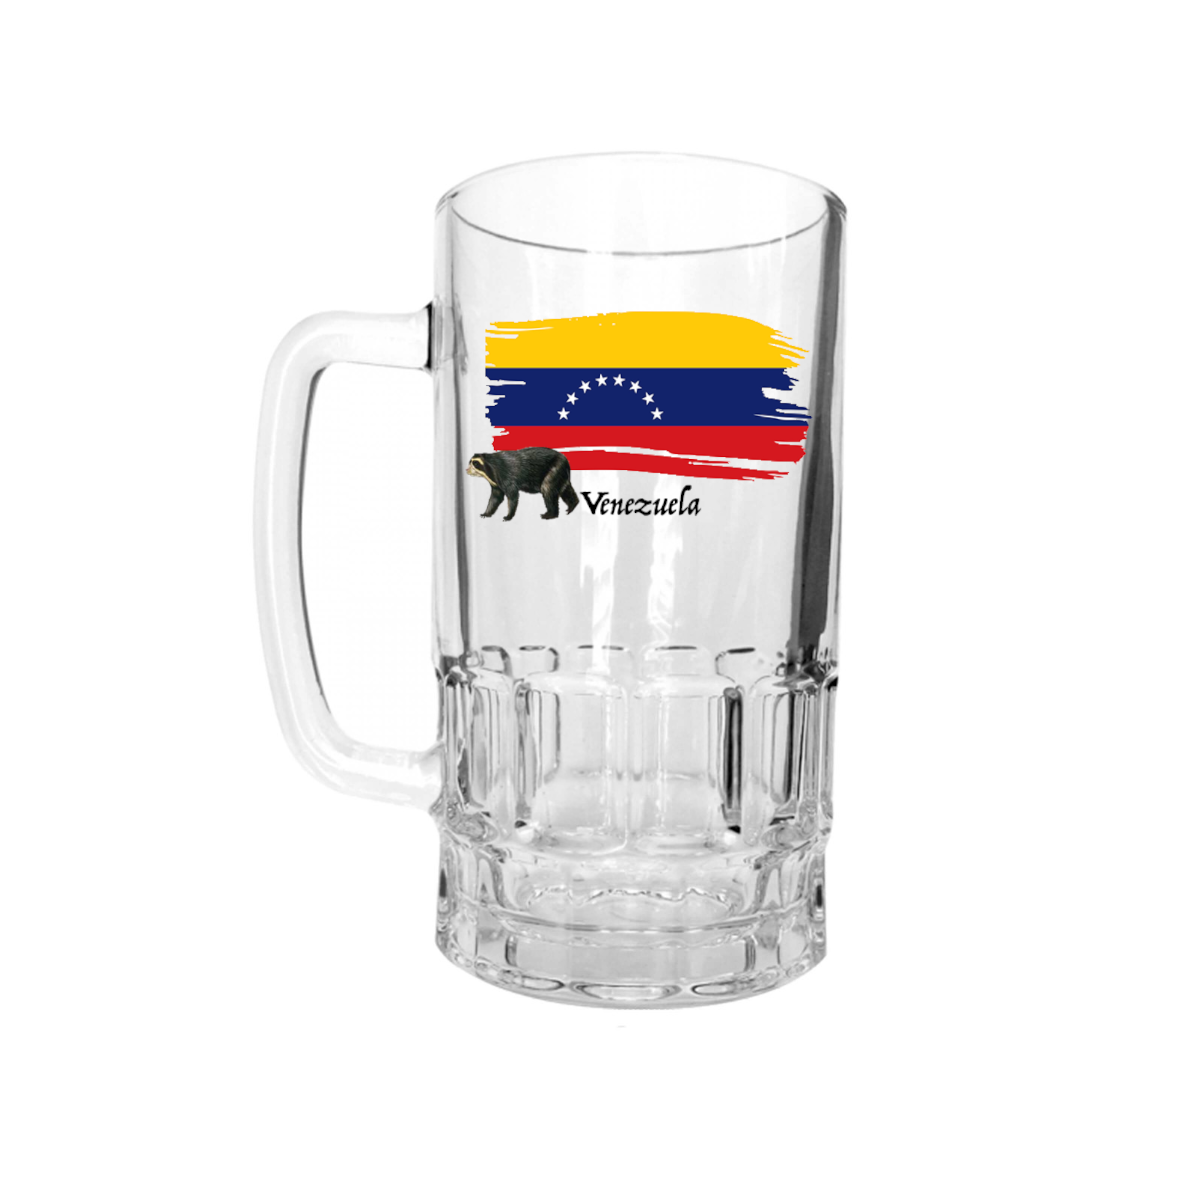 AGAD Turista (I Love Venezuela Glass Beer Stein)